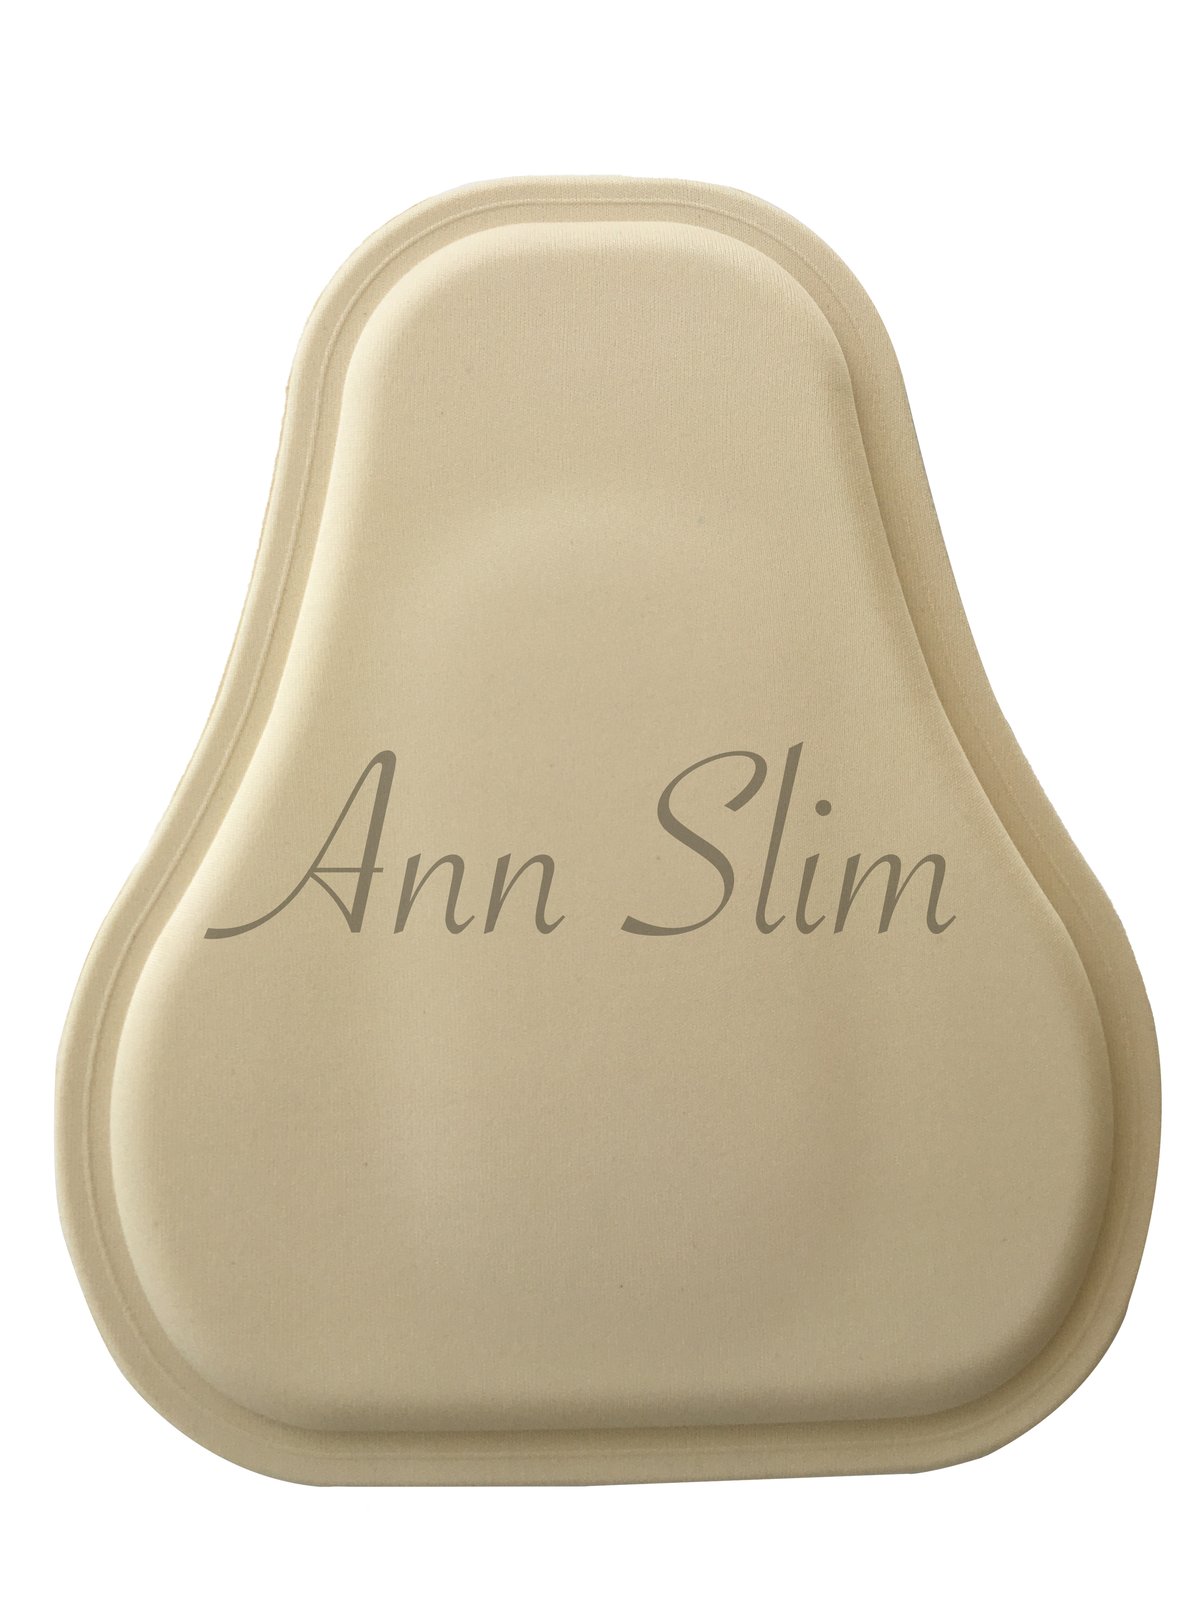 Ann Slim 500 Abdominal Board Pear Shape